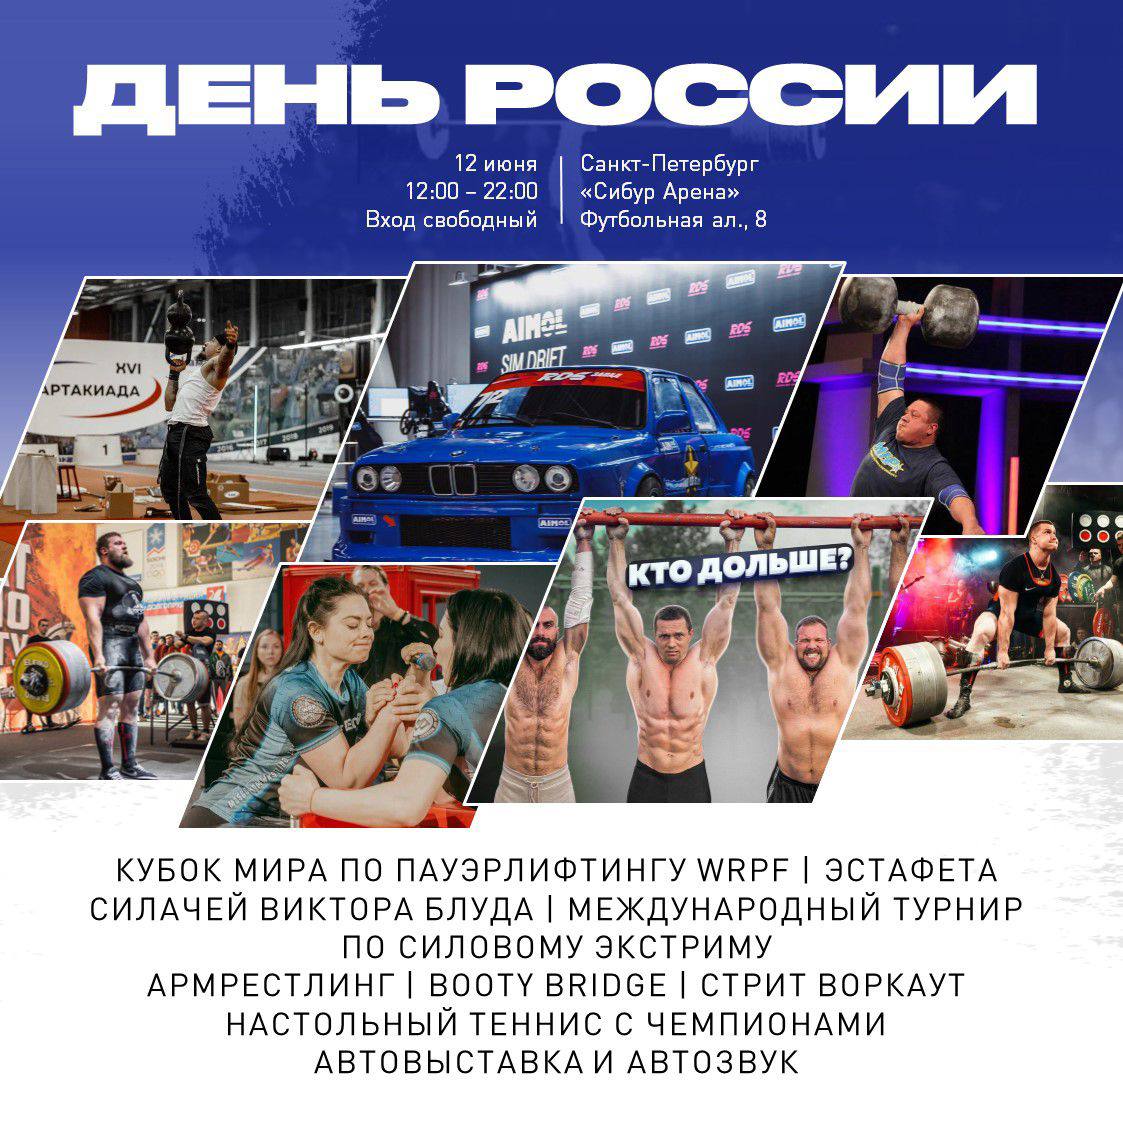 фото: 12 июня в Санкт-Петербурге пройдет Международный турнир бойцовской лиги «Наше Дело» и чемпионат мира по пауэрлифтингу